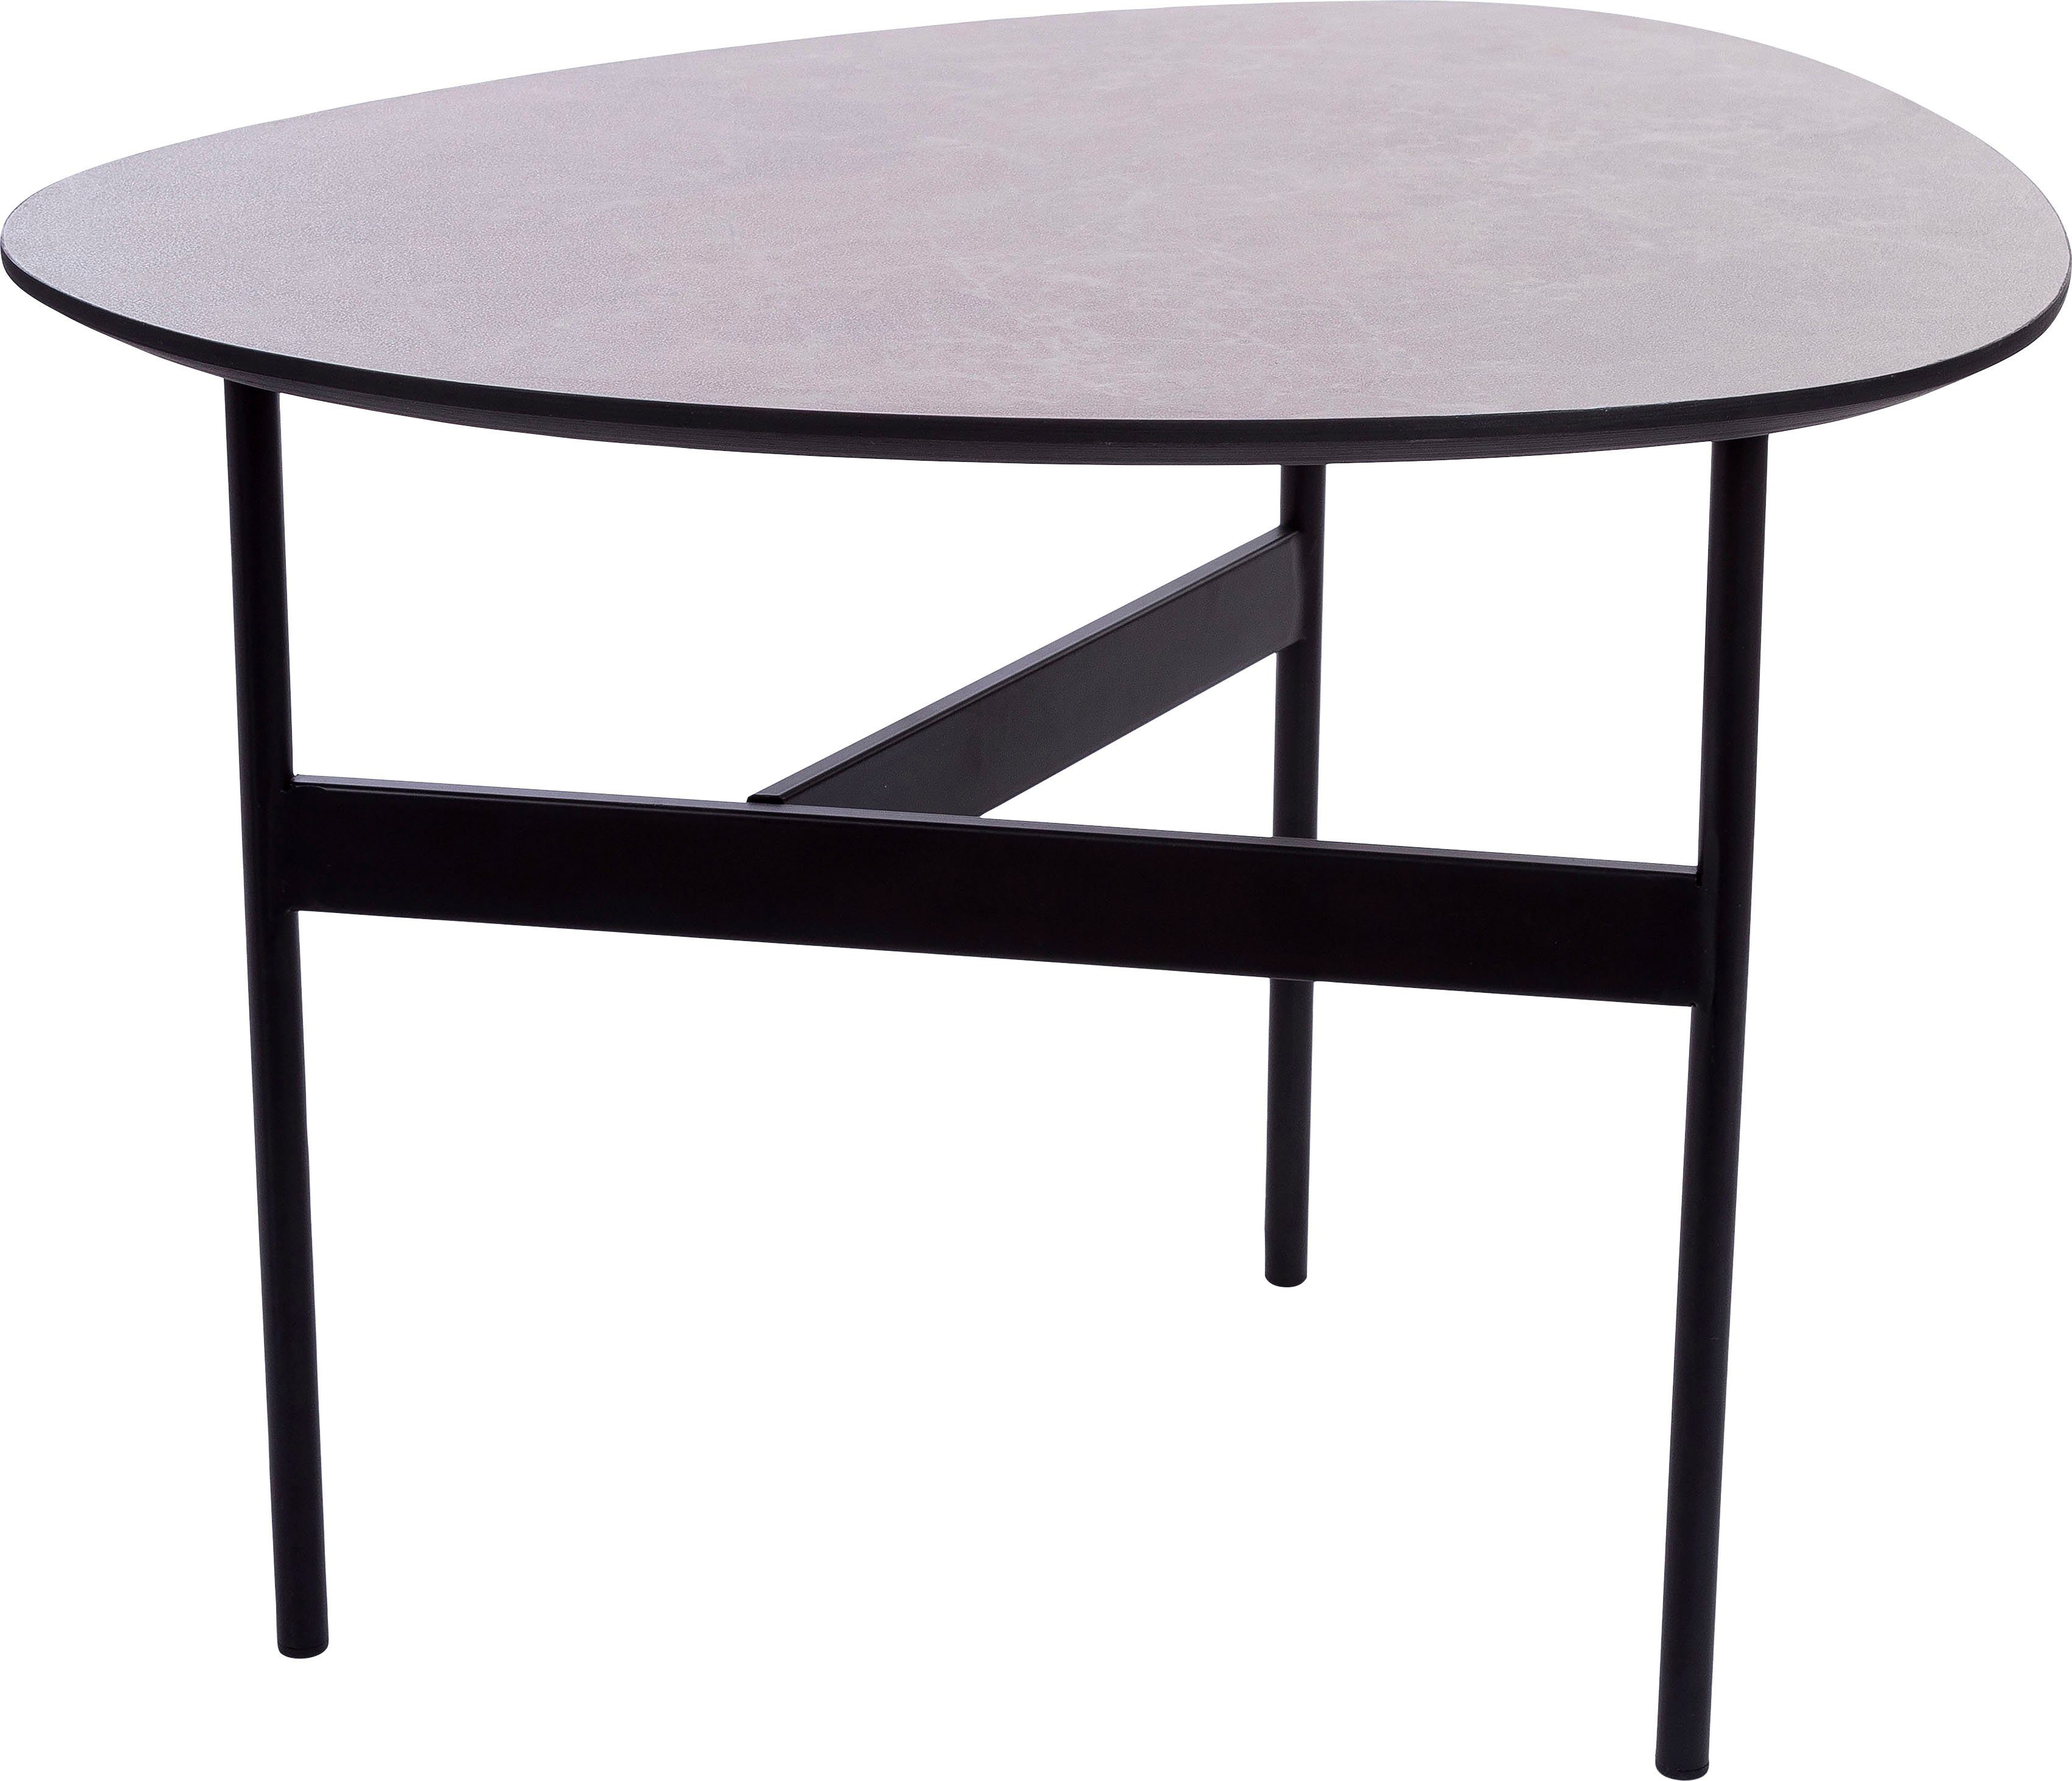 Beistelltisch, grau Home Tischplatte, affaire Gestell 3 lackierter Oval, Beistelltisch Bein